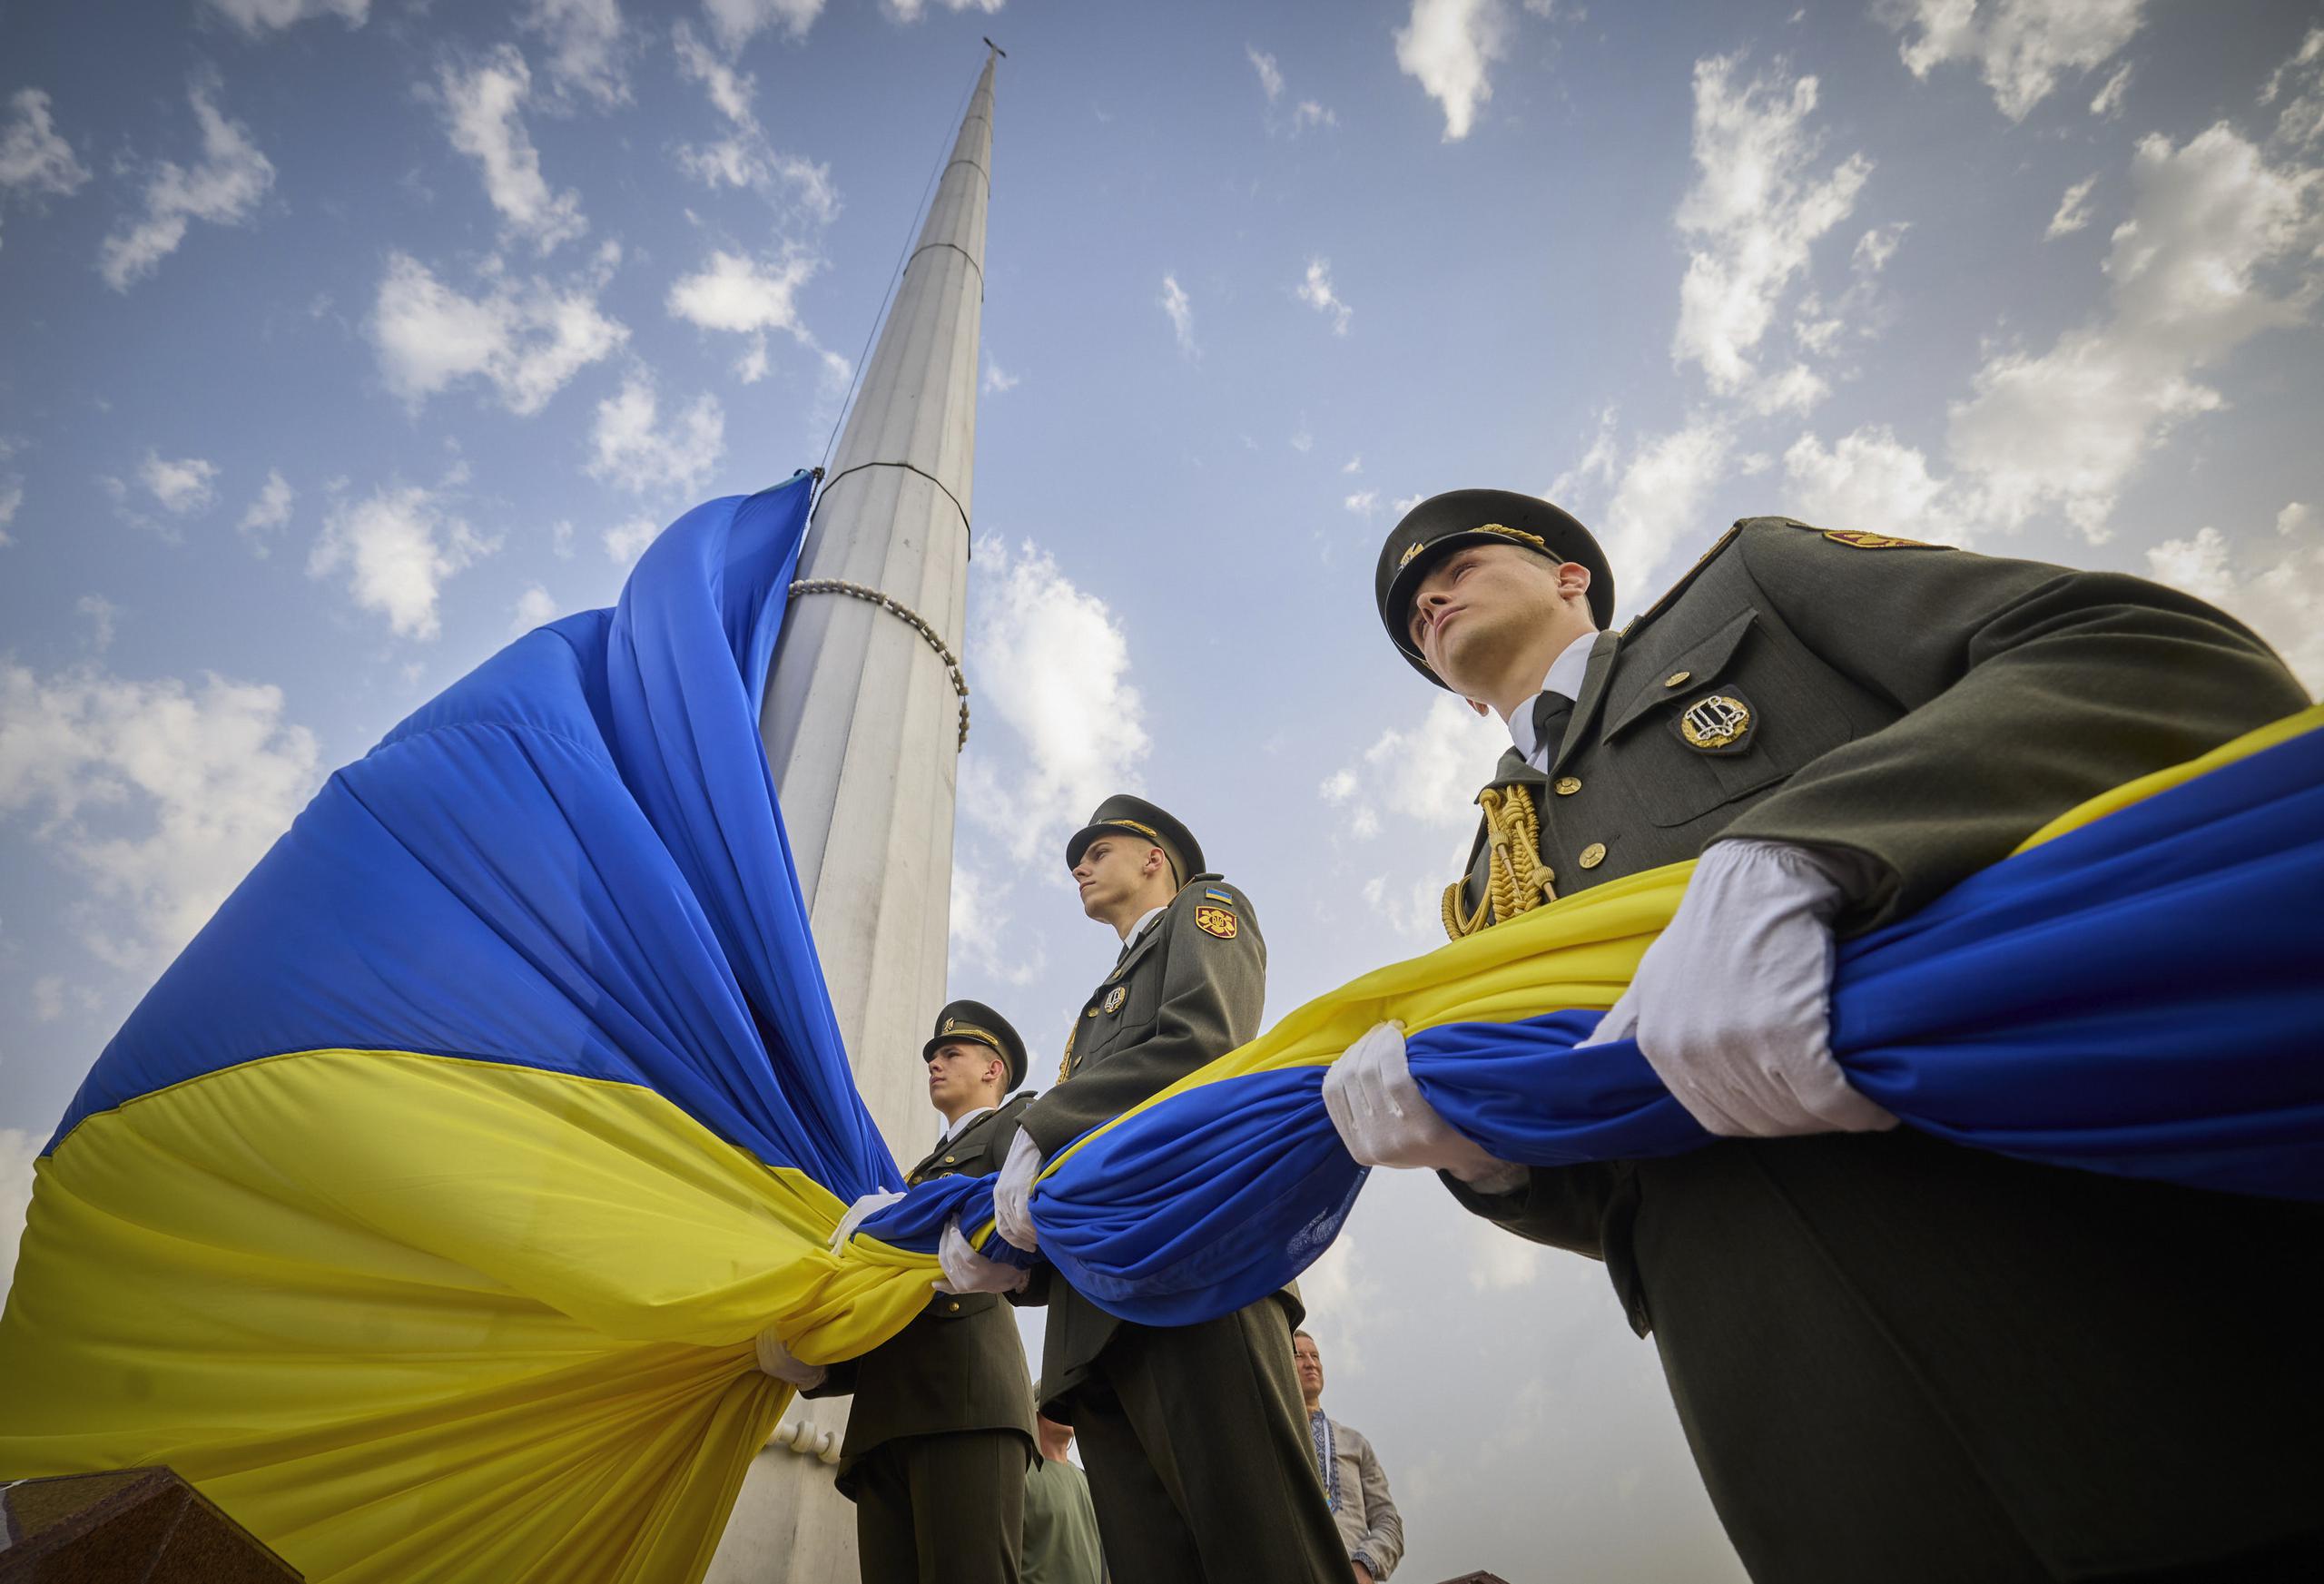 En esta imagen, proporcionada por la oficina de prensa de la presidencia de Ucrania, soldados de la guardia de honor se preparan para izar la bandera nacional durante la celebración del Día Nacional de la Bandera, en Kiev, Ucrania, el 23 de agosto de 2022. (Oficina de prensa de la presidencia de Ucrania vía AP)